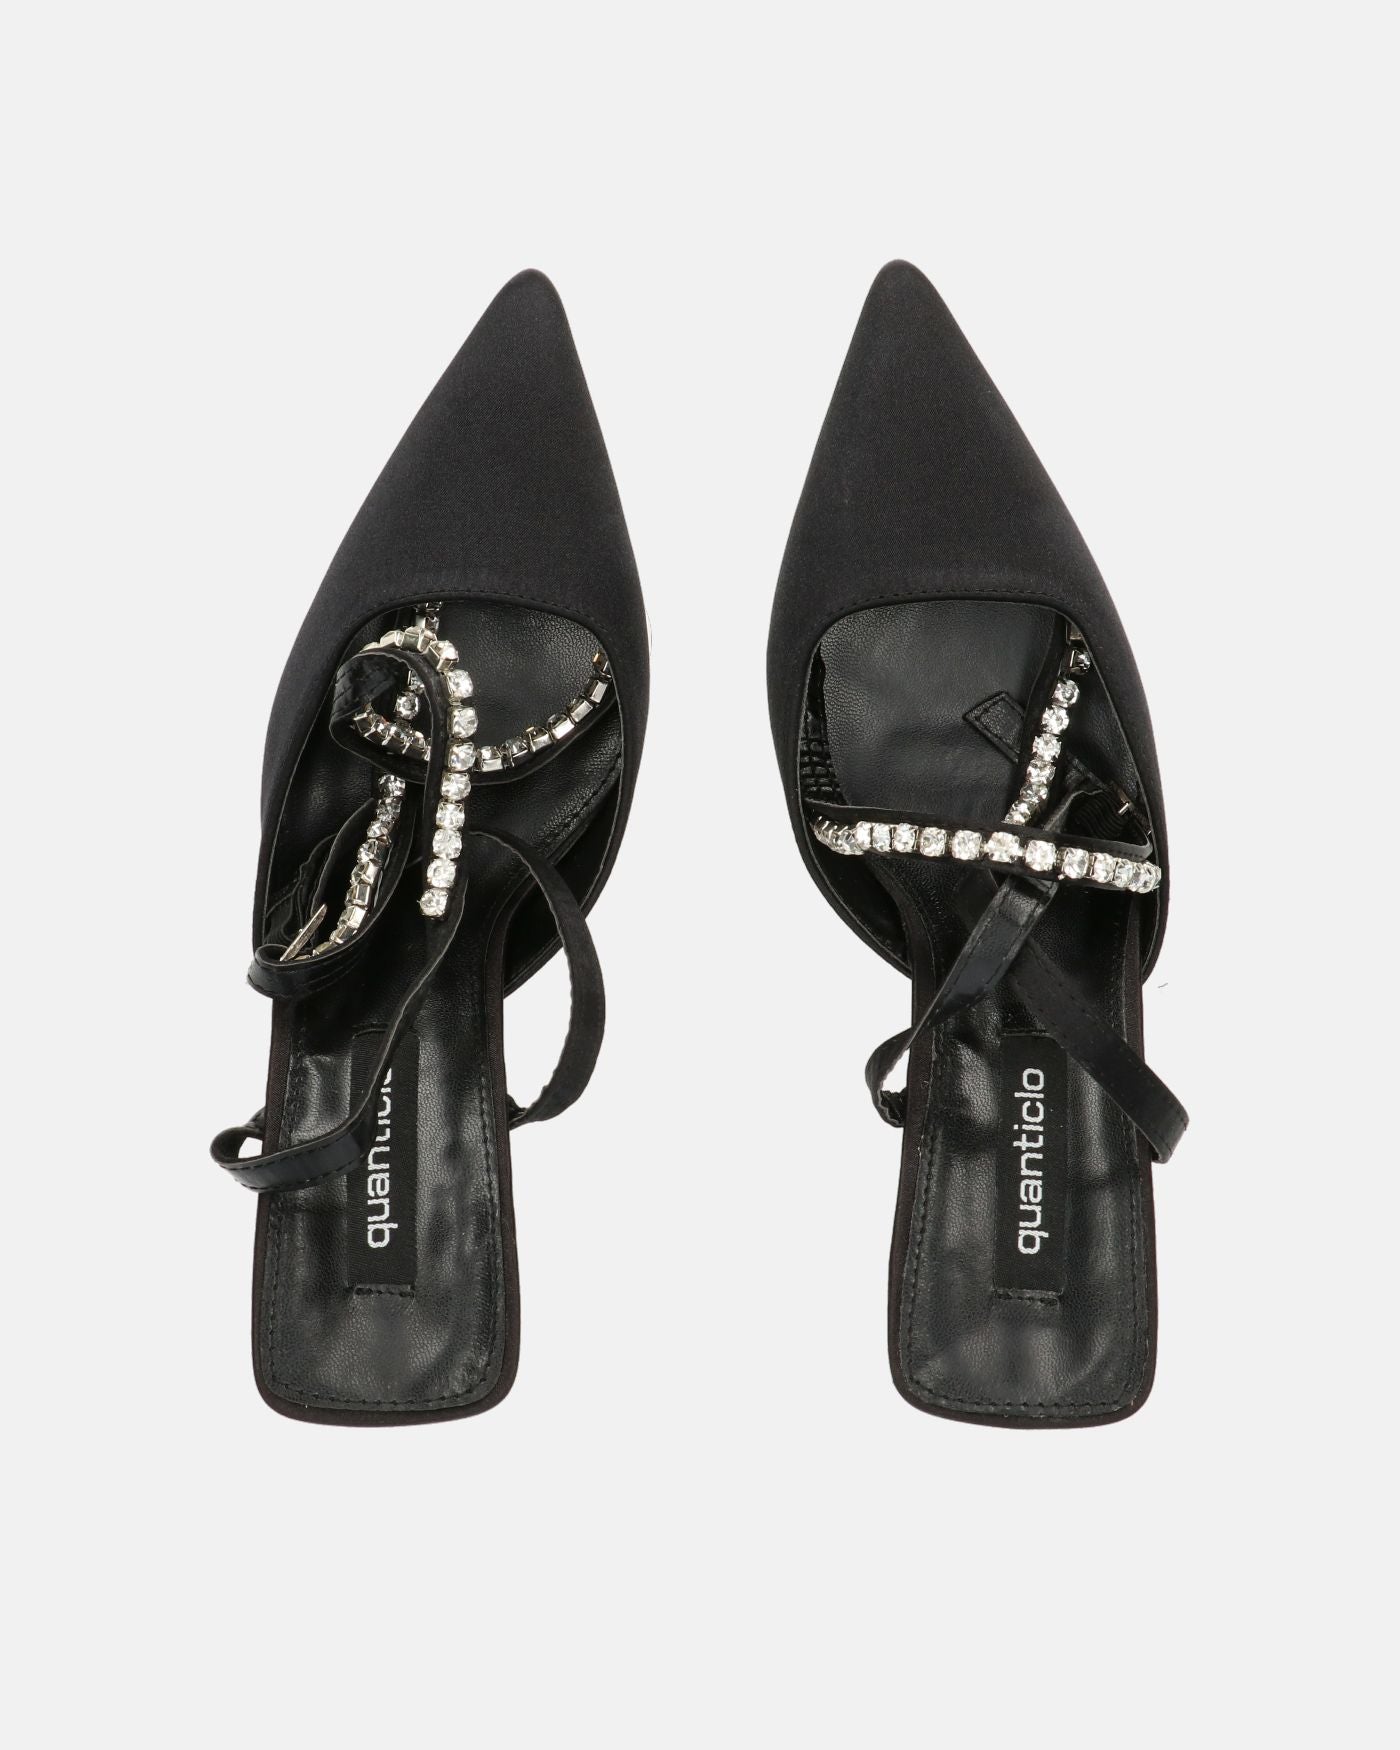 DORIS - scarpe con tacco il lycra nero e gemme sul cinturino